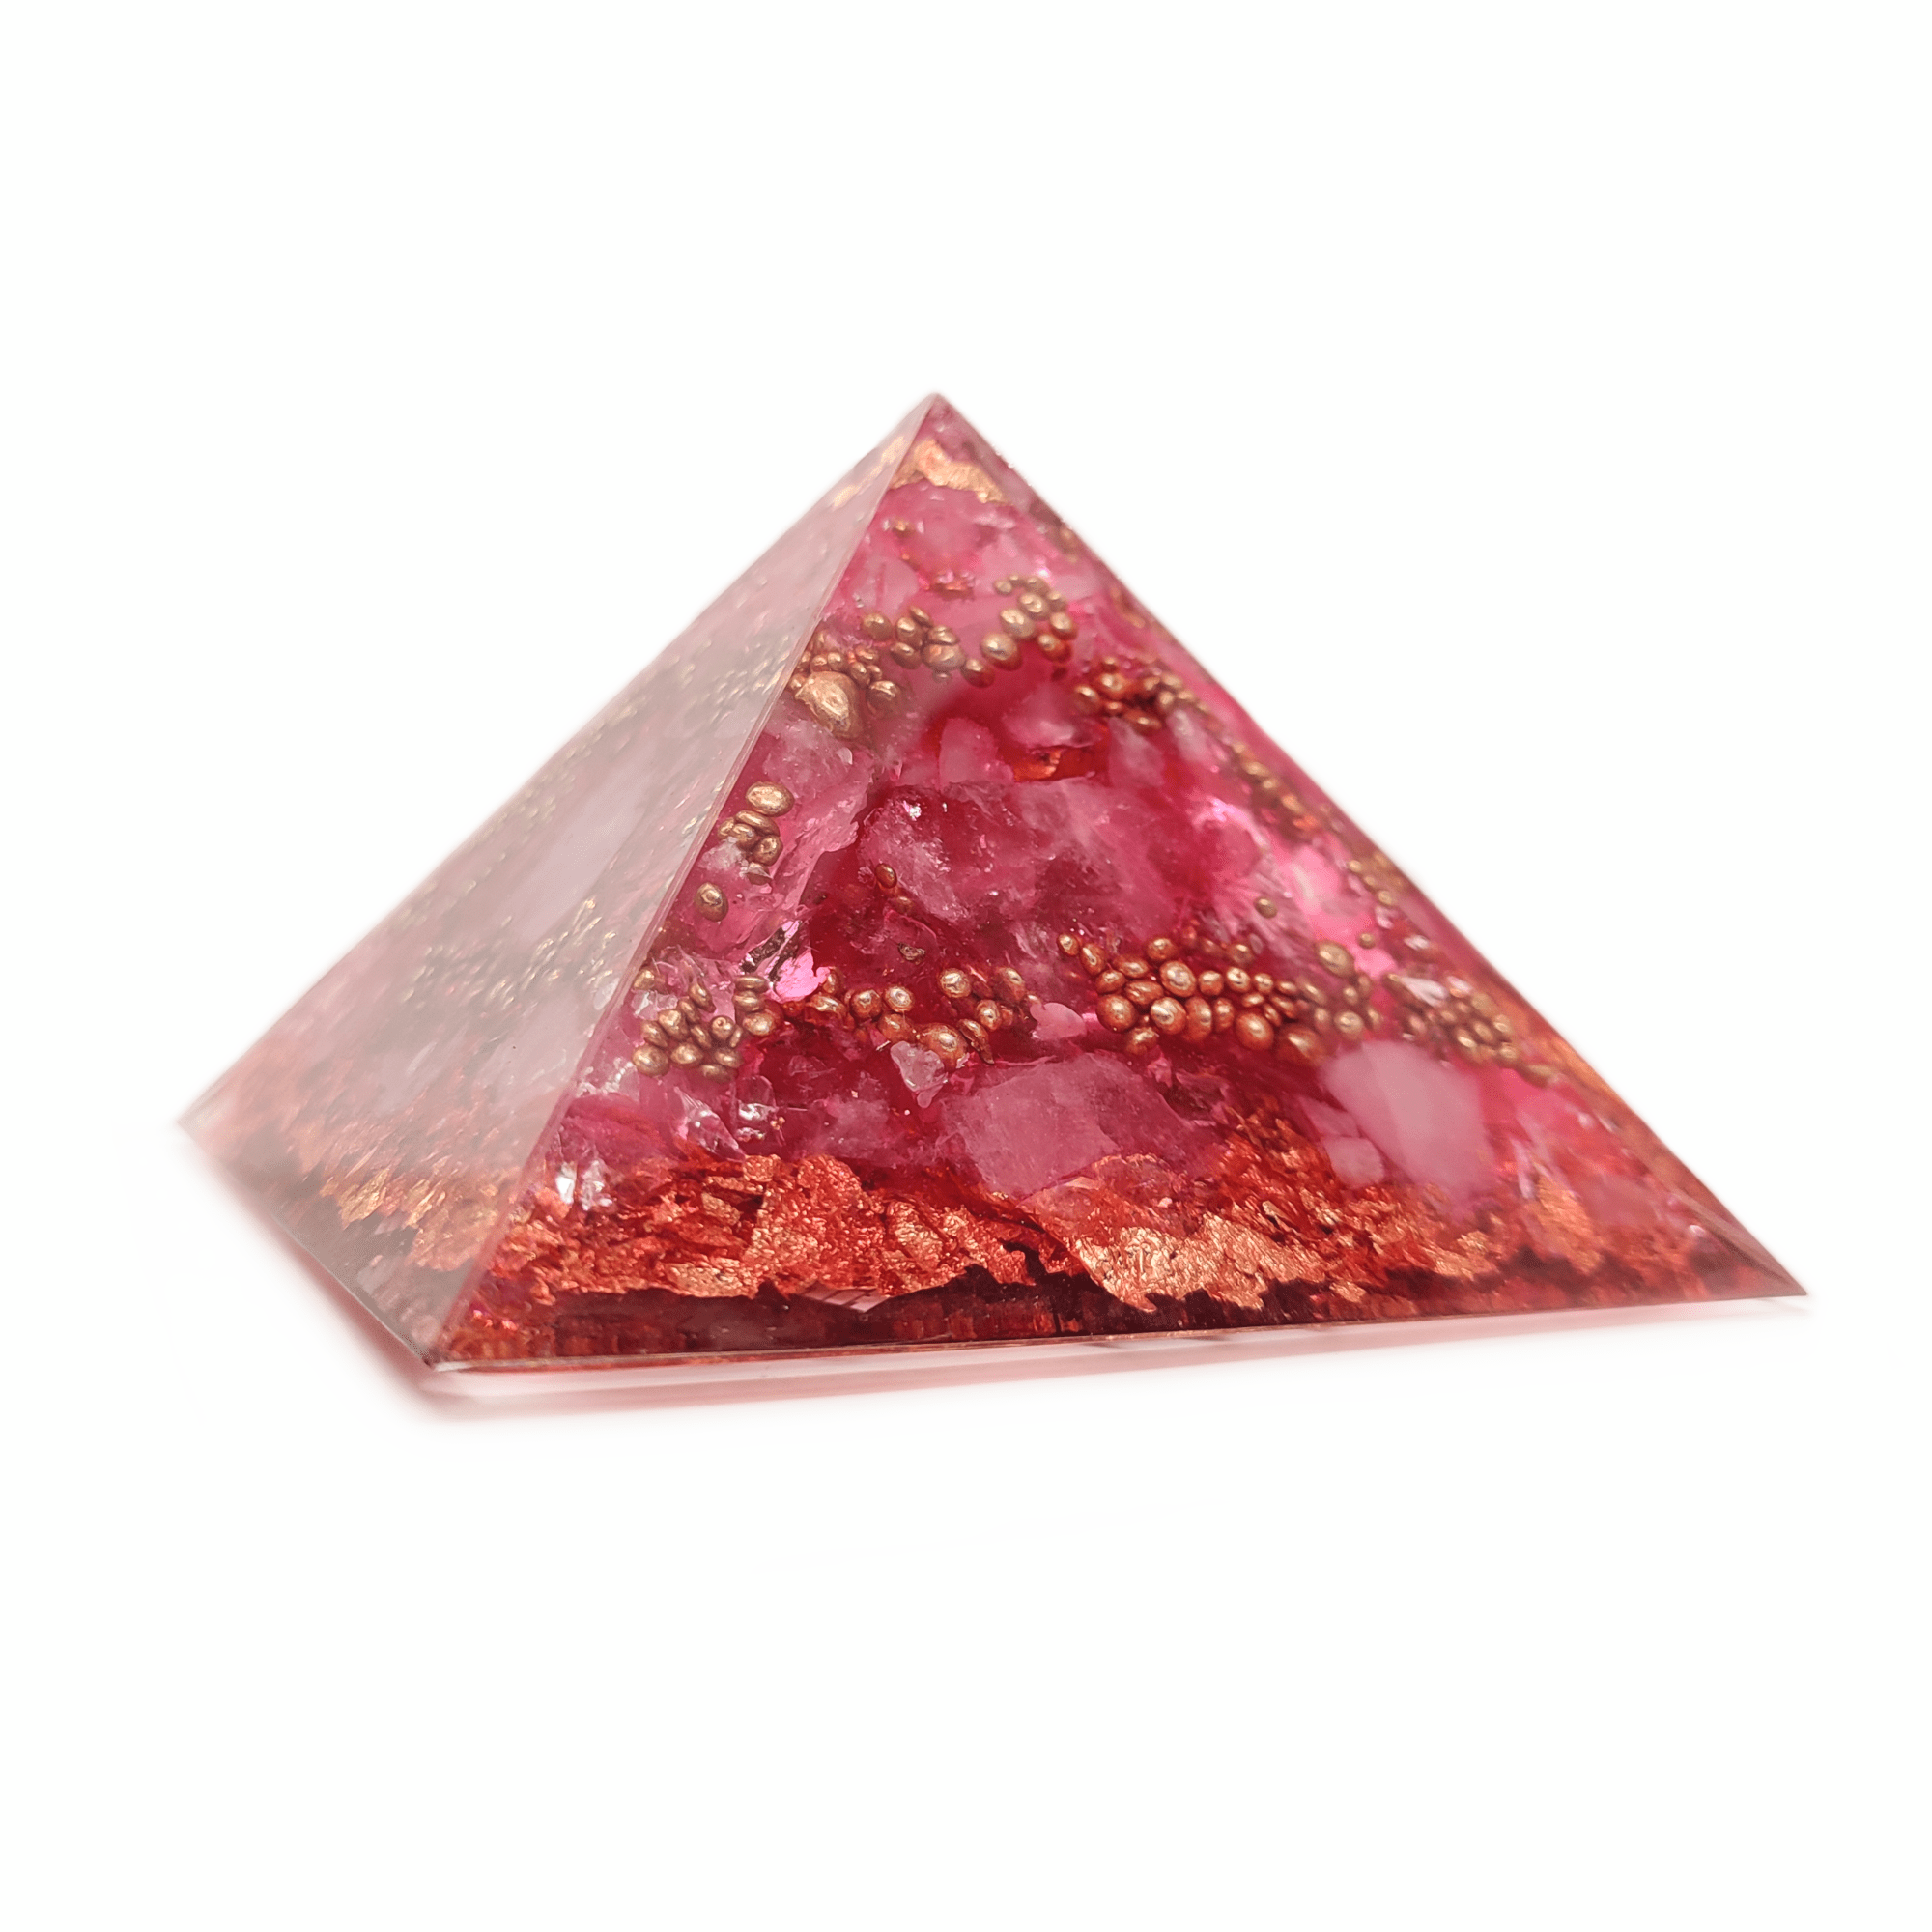 Eine intensiv rosé-farbene Orgonit Pyramide, welche aus Erdbeer & Rosenquarzen besteht. Die Metall Elemente dieses Orgoniten sind in Rosé-goldener Farbe gehalten.